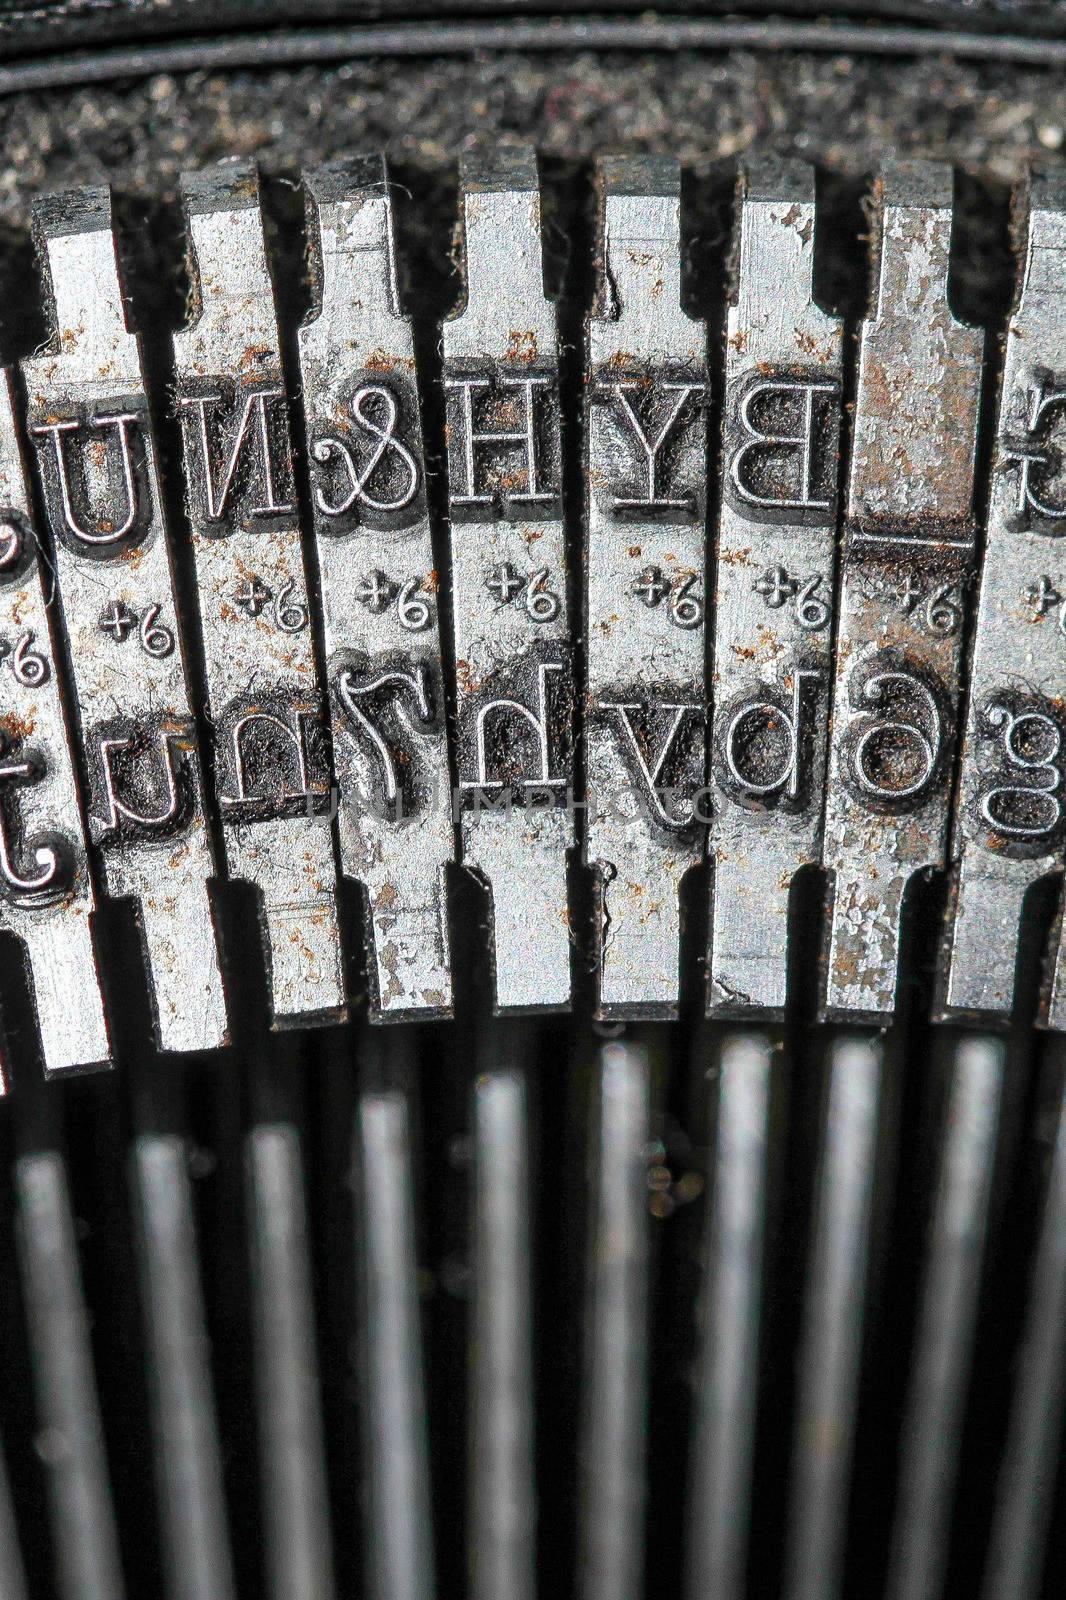 Typewriter detail by MVP